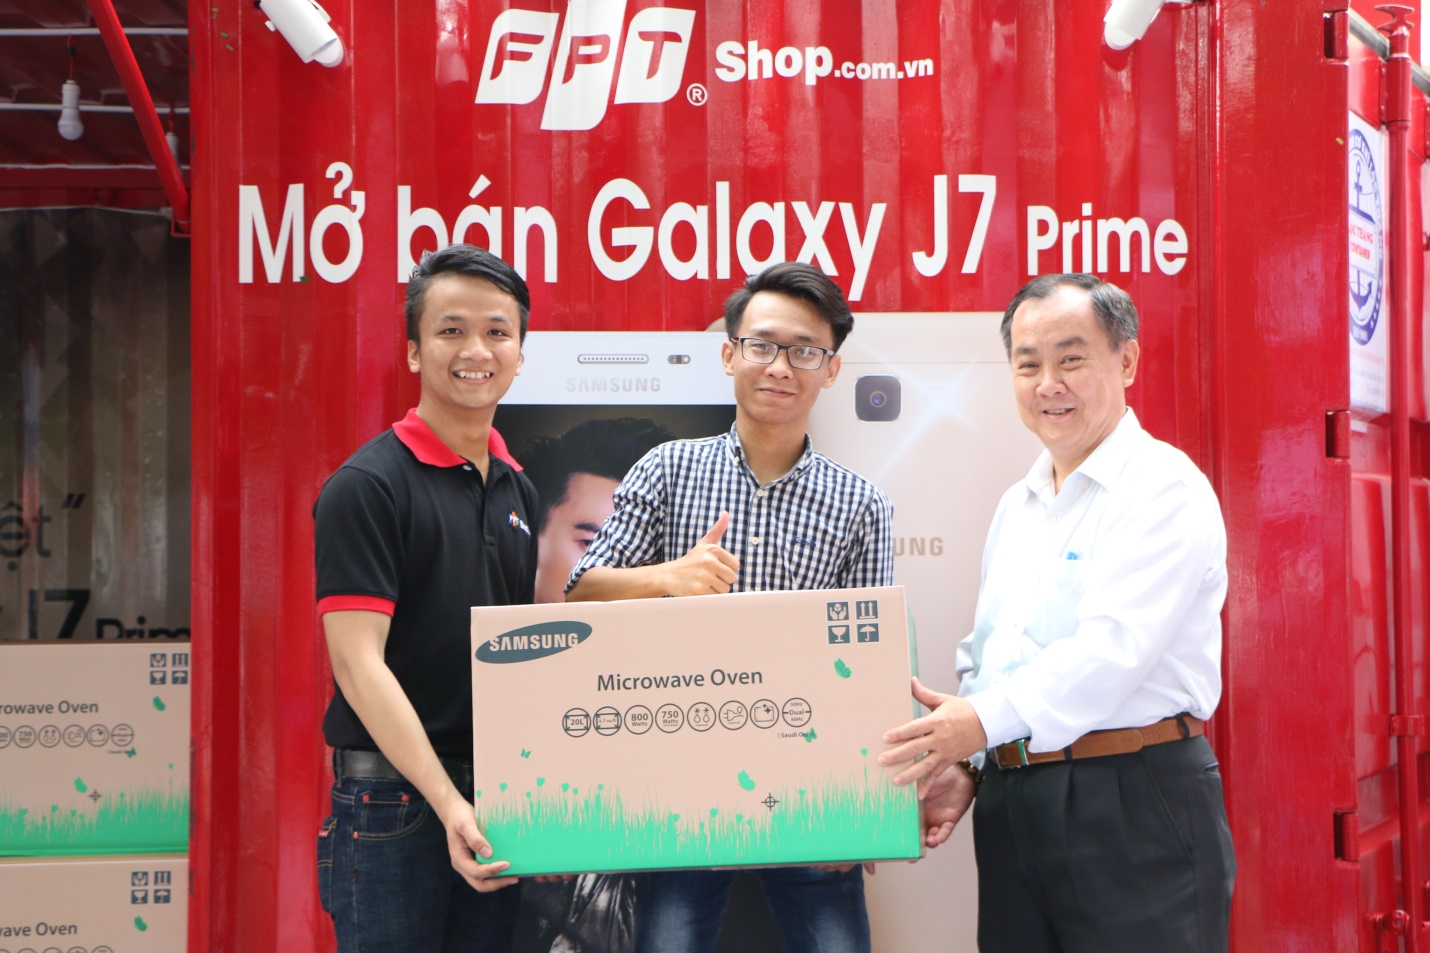 Ông Trần Tuấn Thông, Giám Đốc Kinh doanh Samsung Vina cũng đến buổi mở bán J7 Prime của FPT Shop và tận tay trao quà tặng cho những khách hàng đặt mua trước sản phẩm